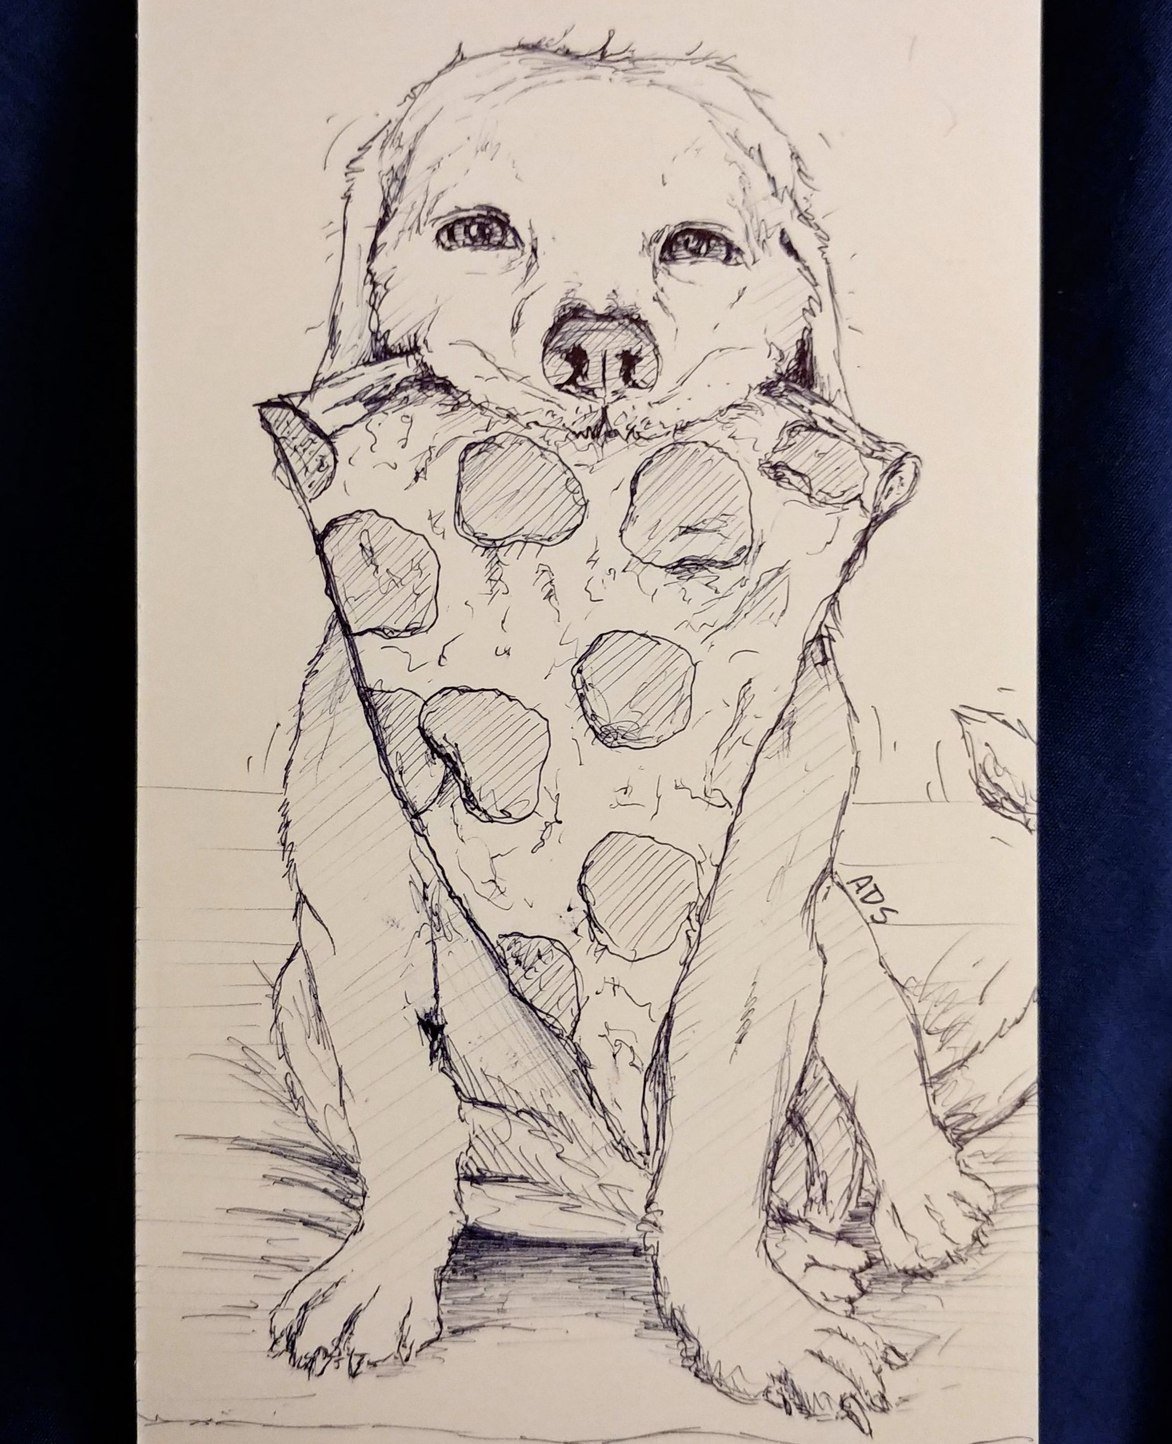 Pizza Dog: OC Art - meme